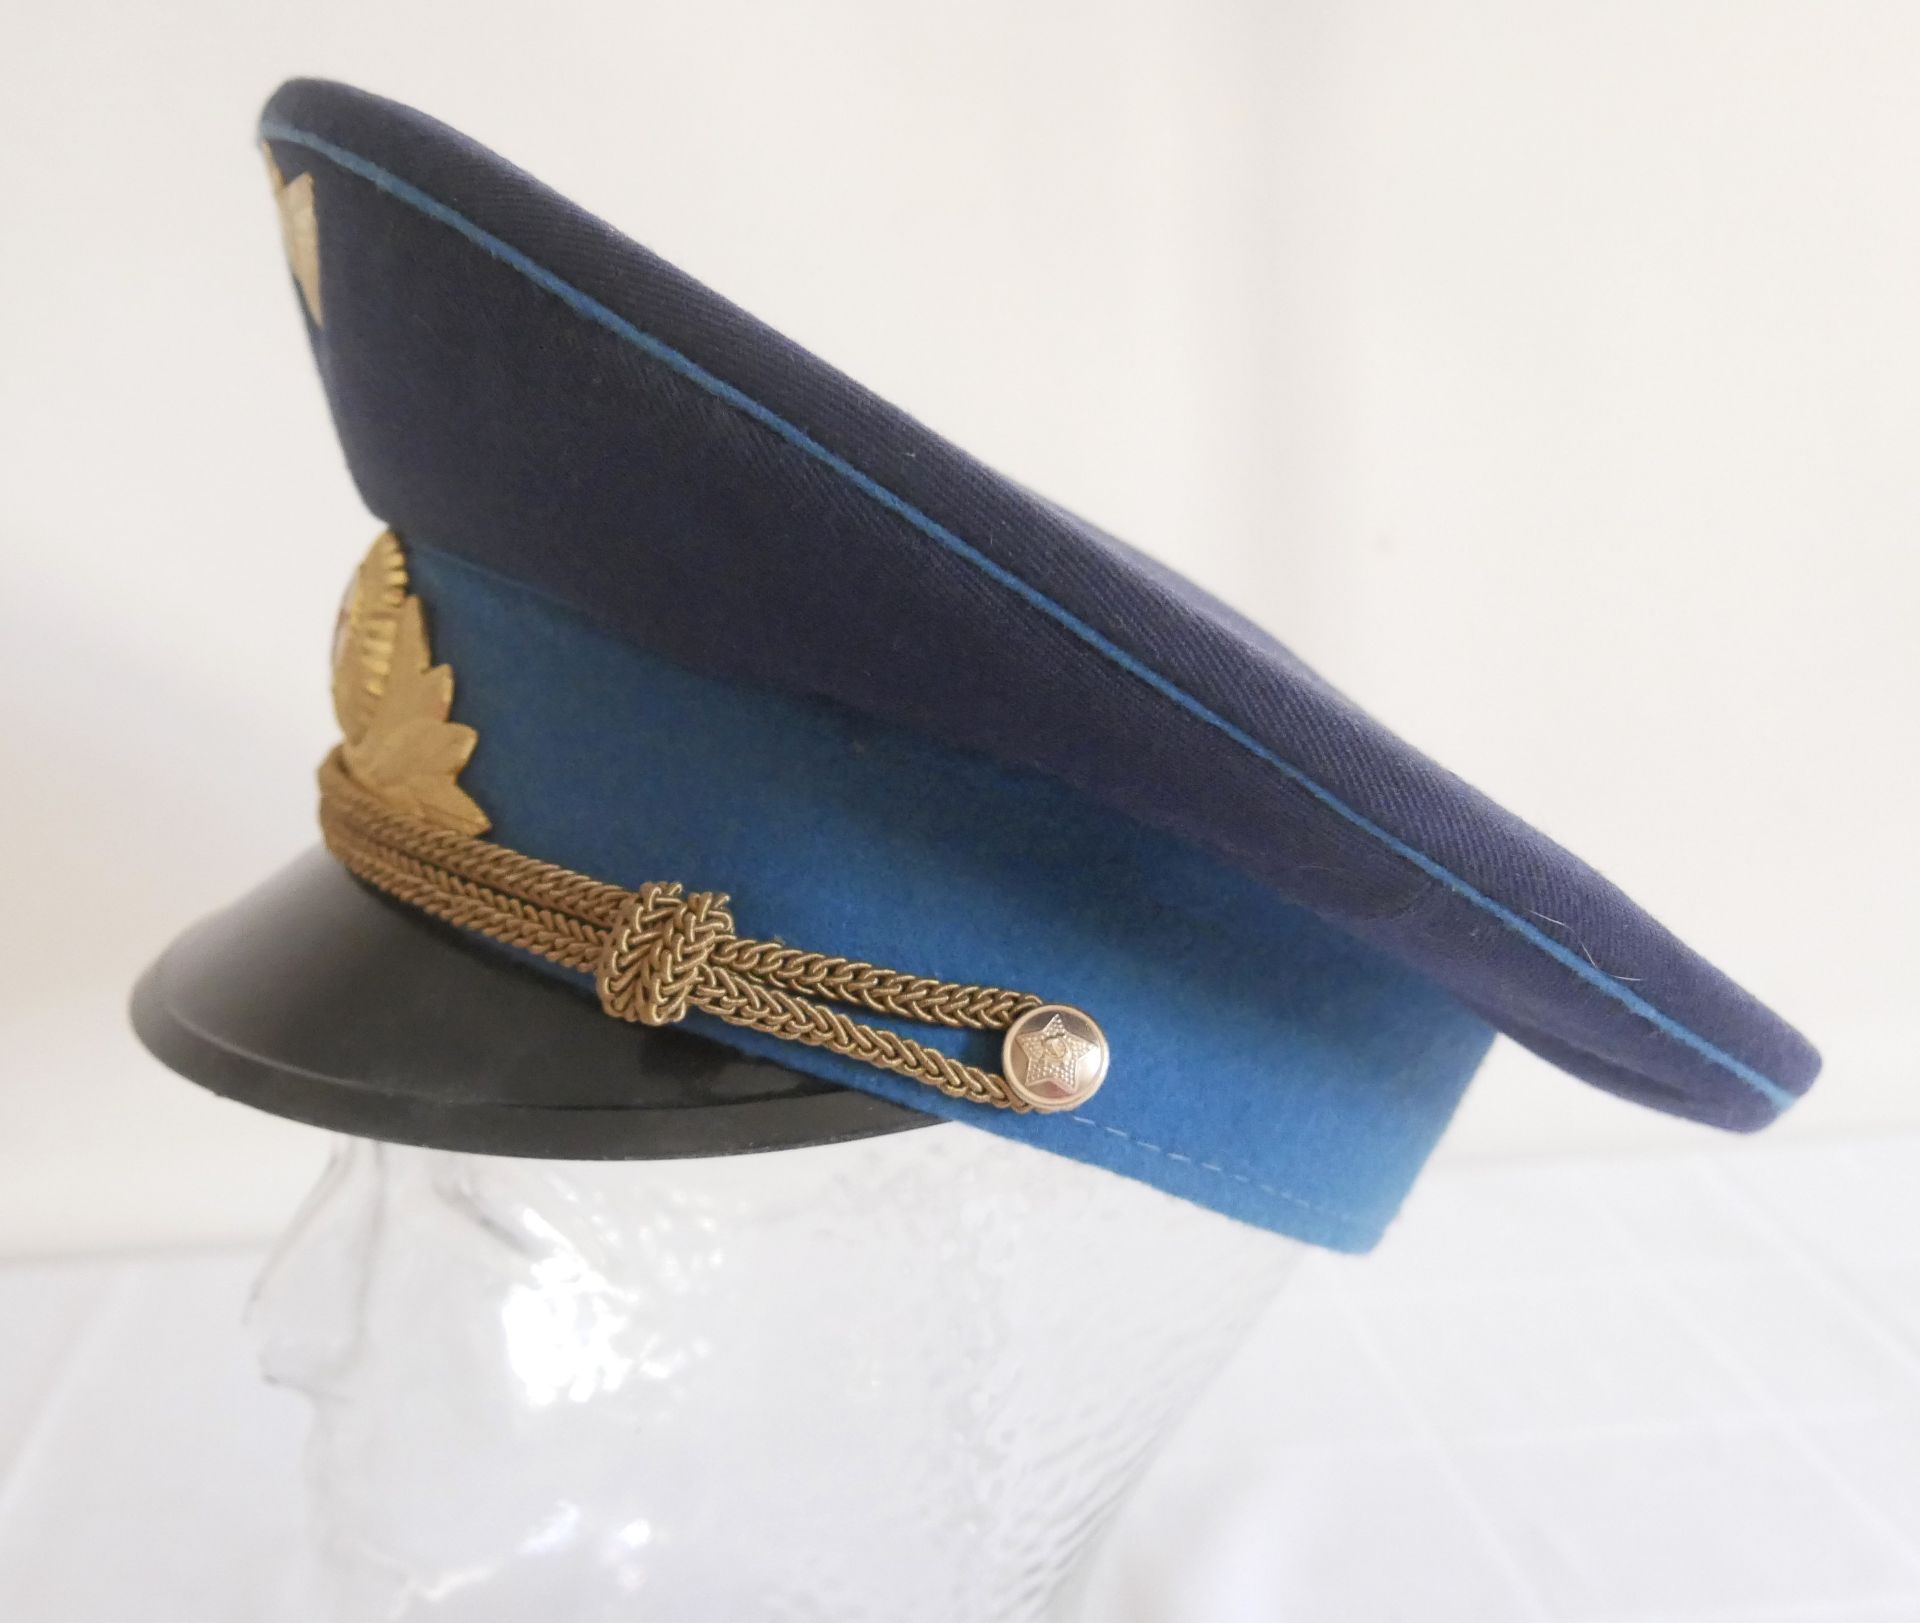 Aus Sammelauflösung! Uniformmütze / Schirmmütze UDSSR CCCP Armee Offizier 1990. Größe 59, in blau, - Bild 2 aus 3